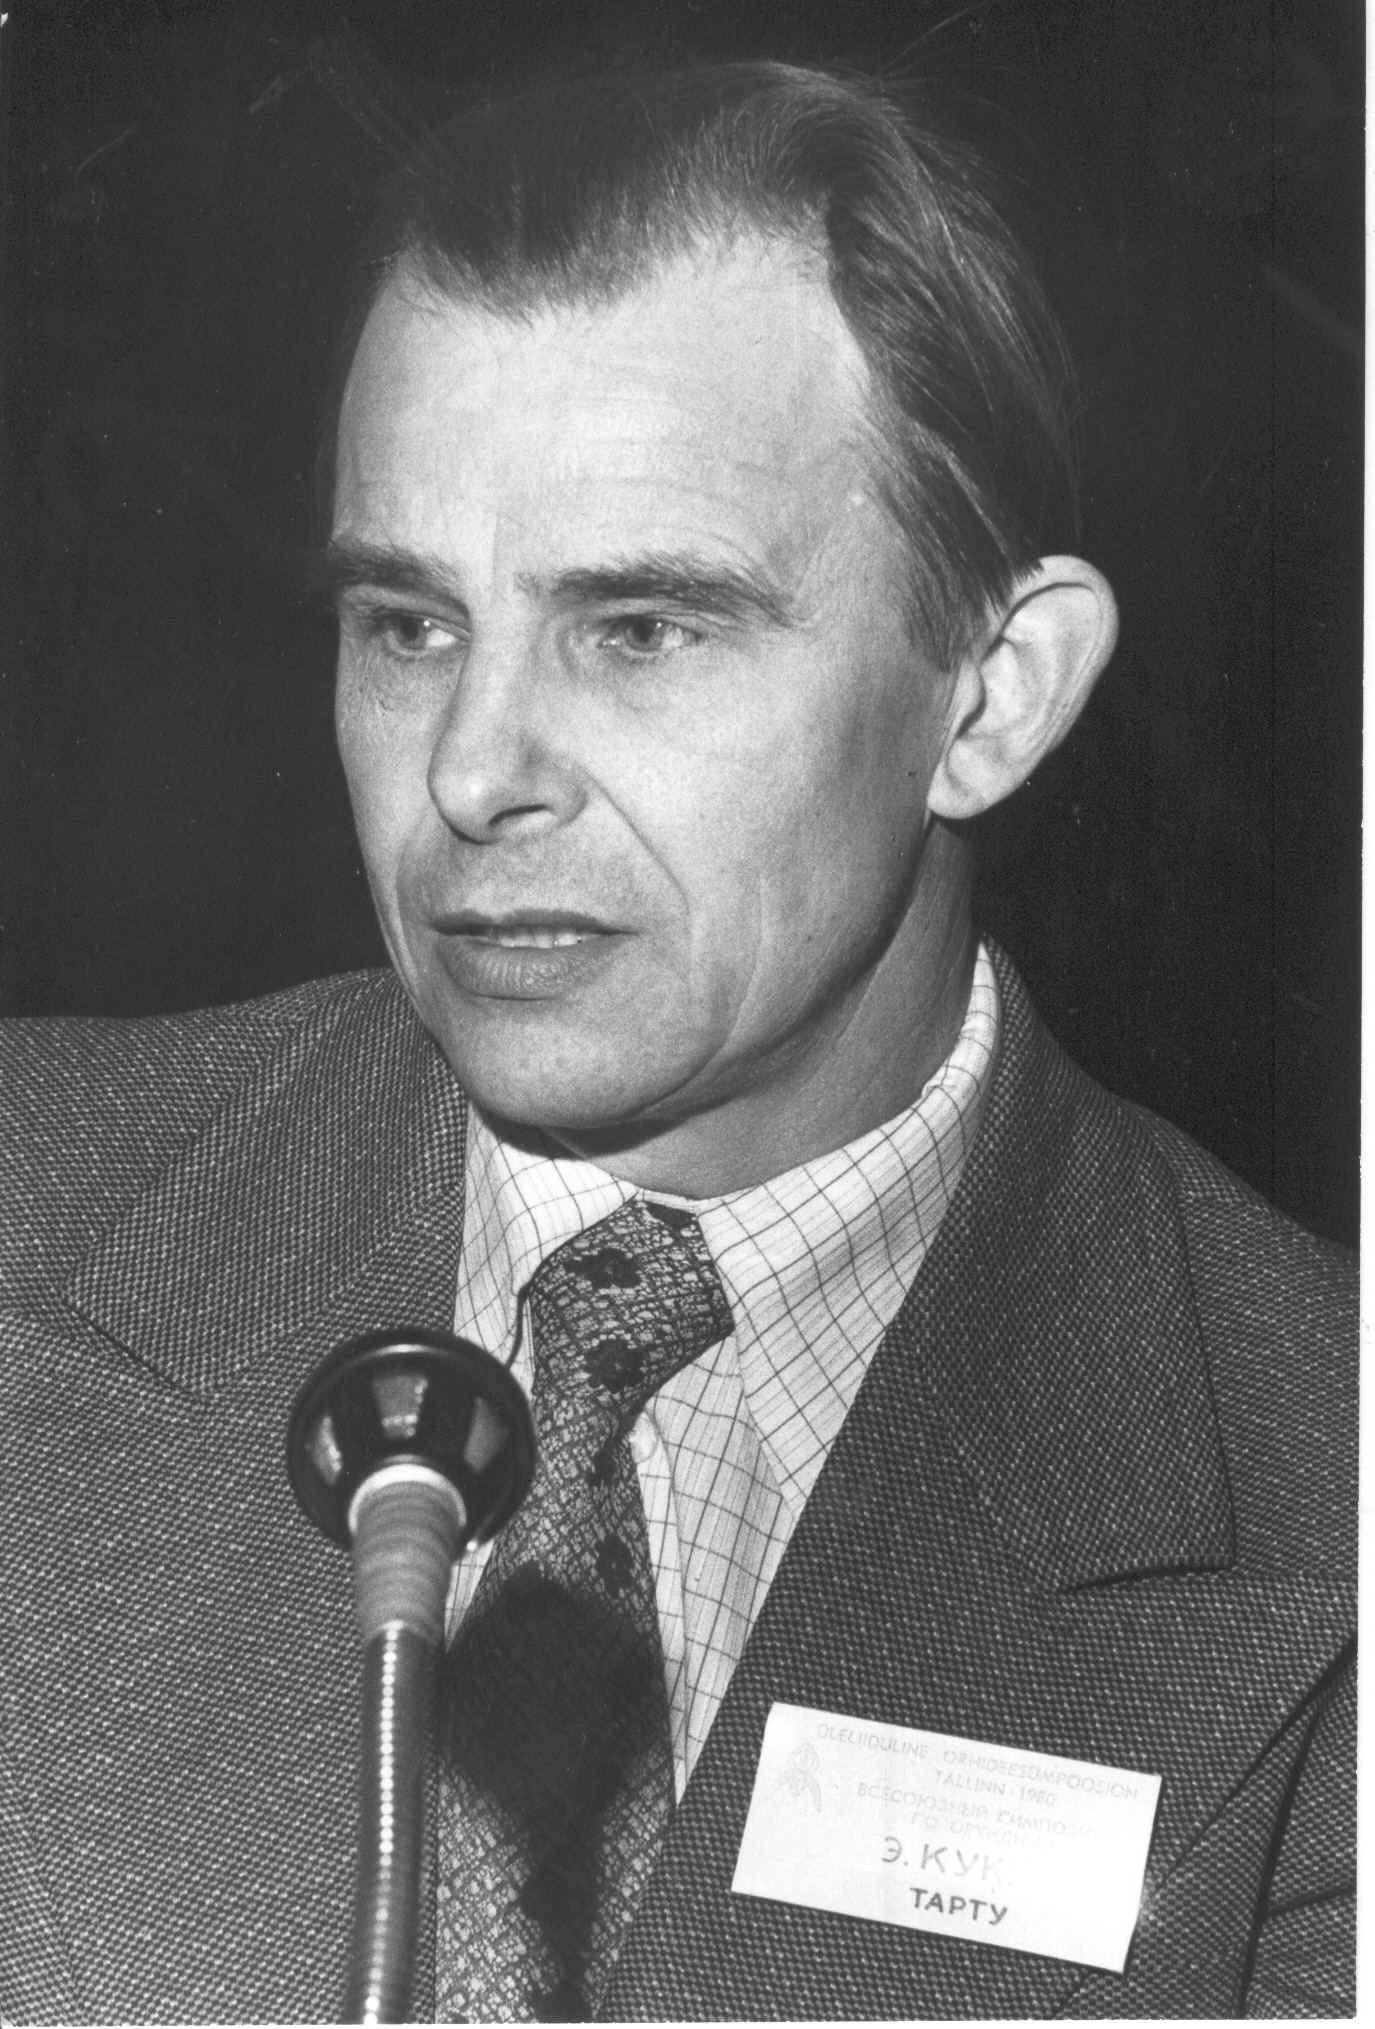 Foto. Kukk, Erich - bioloogiakandidaat esinemas Üleliidulisel Orhideesümpoosiumil Tallinnas 19.märtsil 1980.a.